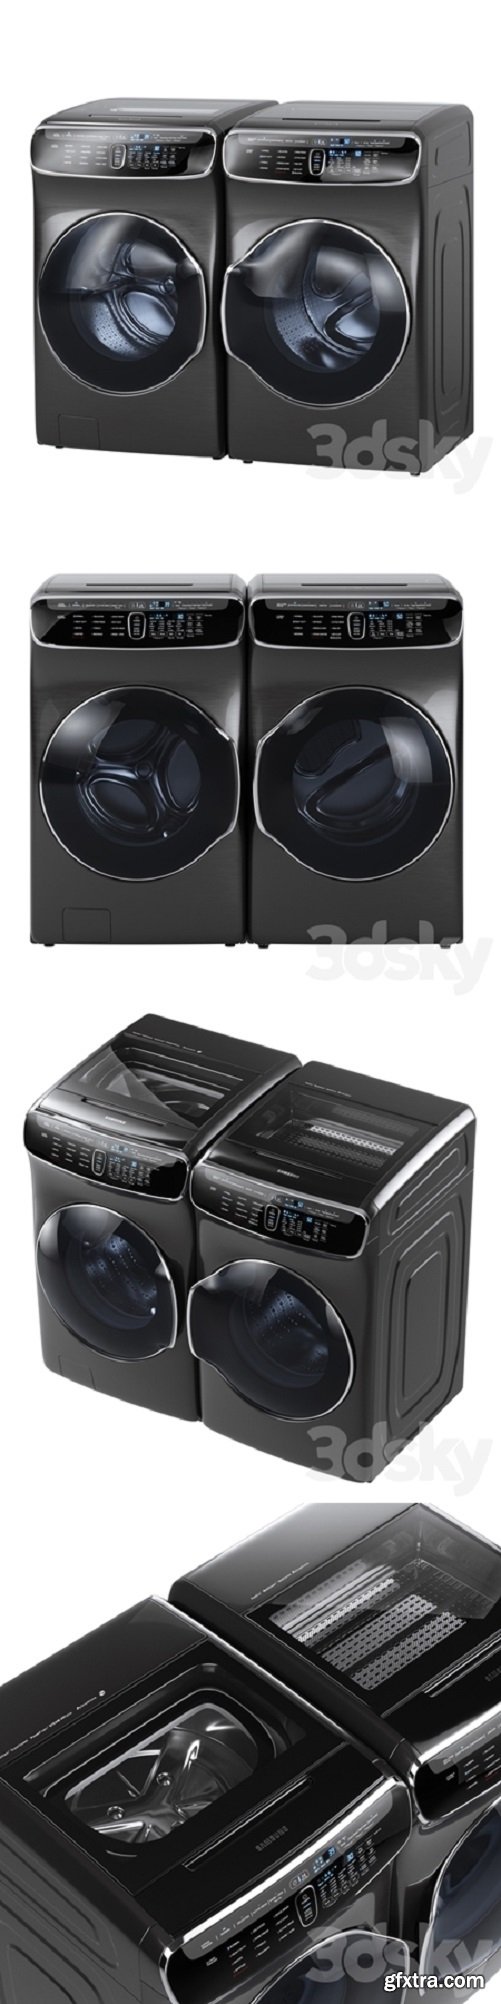 Samsung FlexWash Washer FlexDry Dryer Laundry